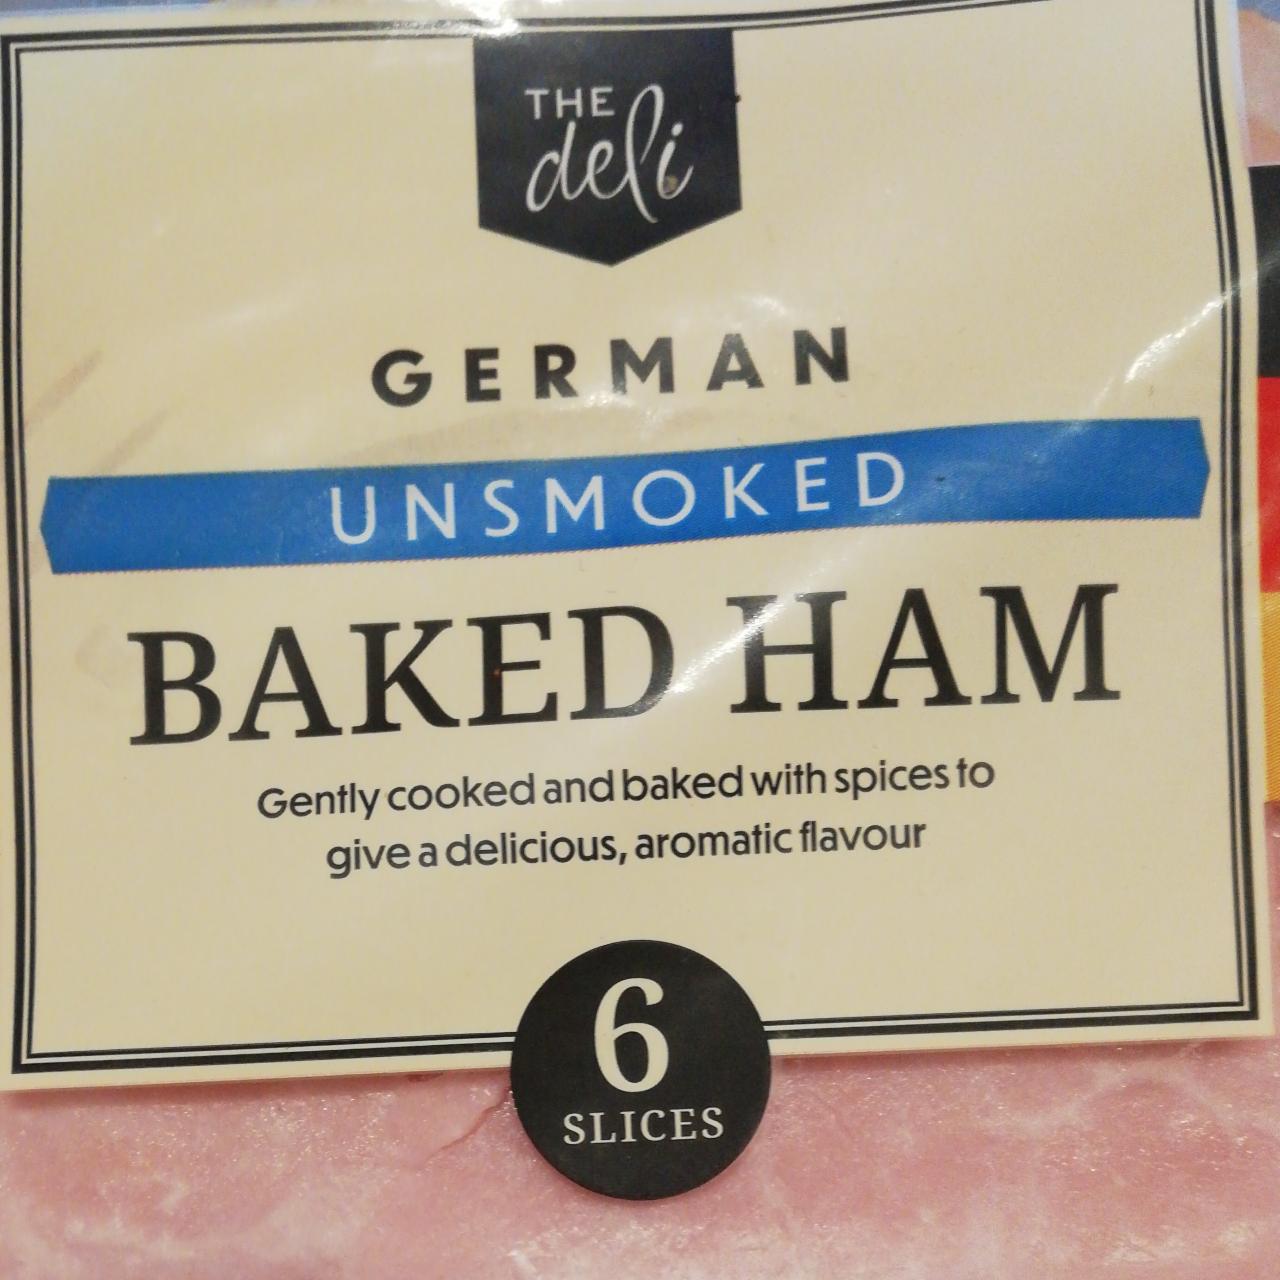 Fotografie - German Unsmoked Baked Ham The deli